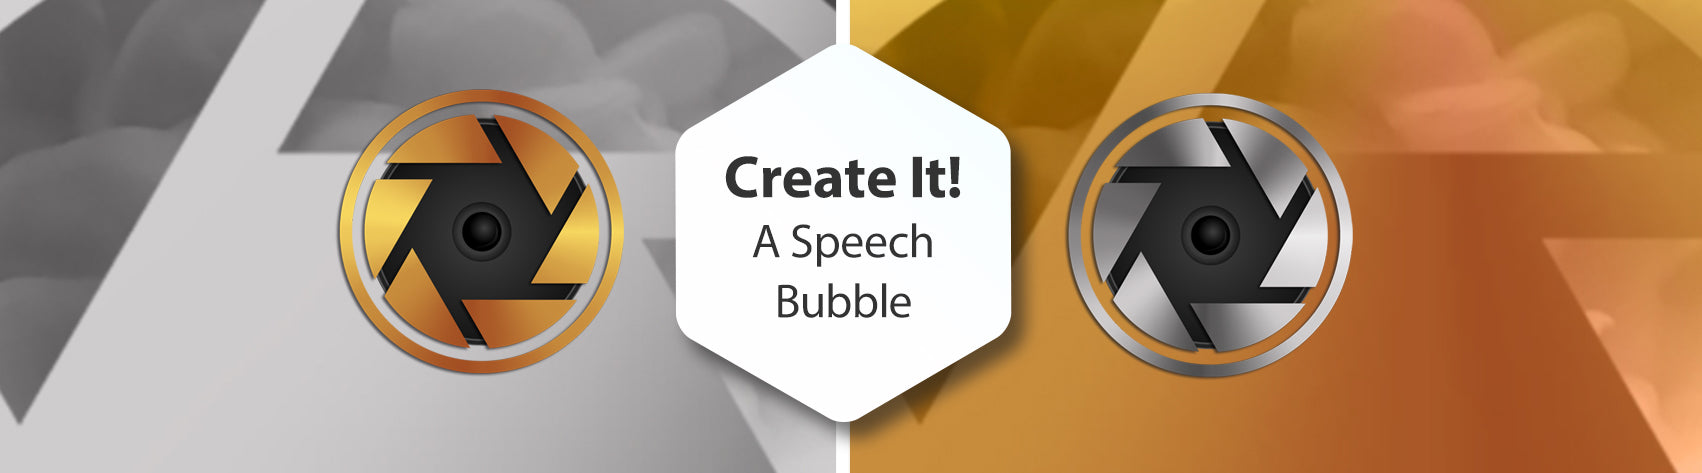 Create It! A Speech Bubble